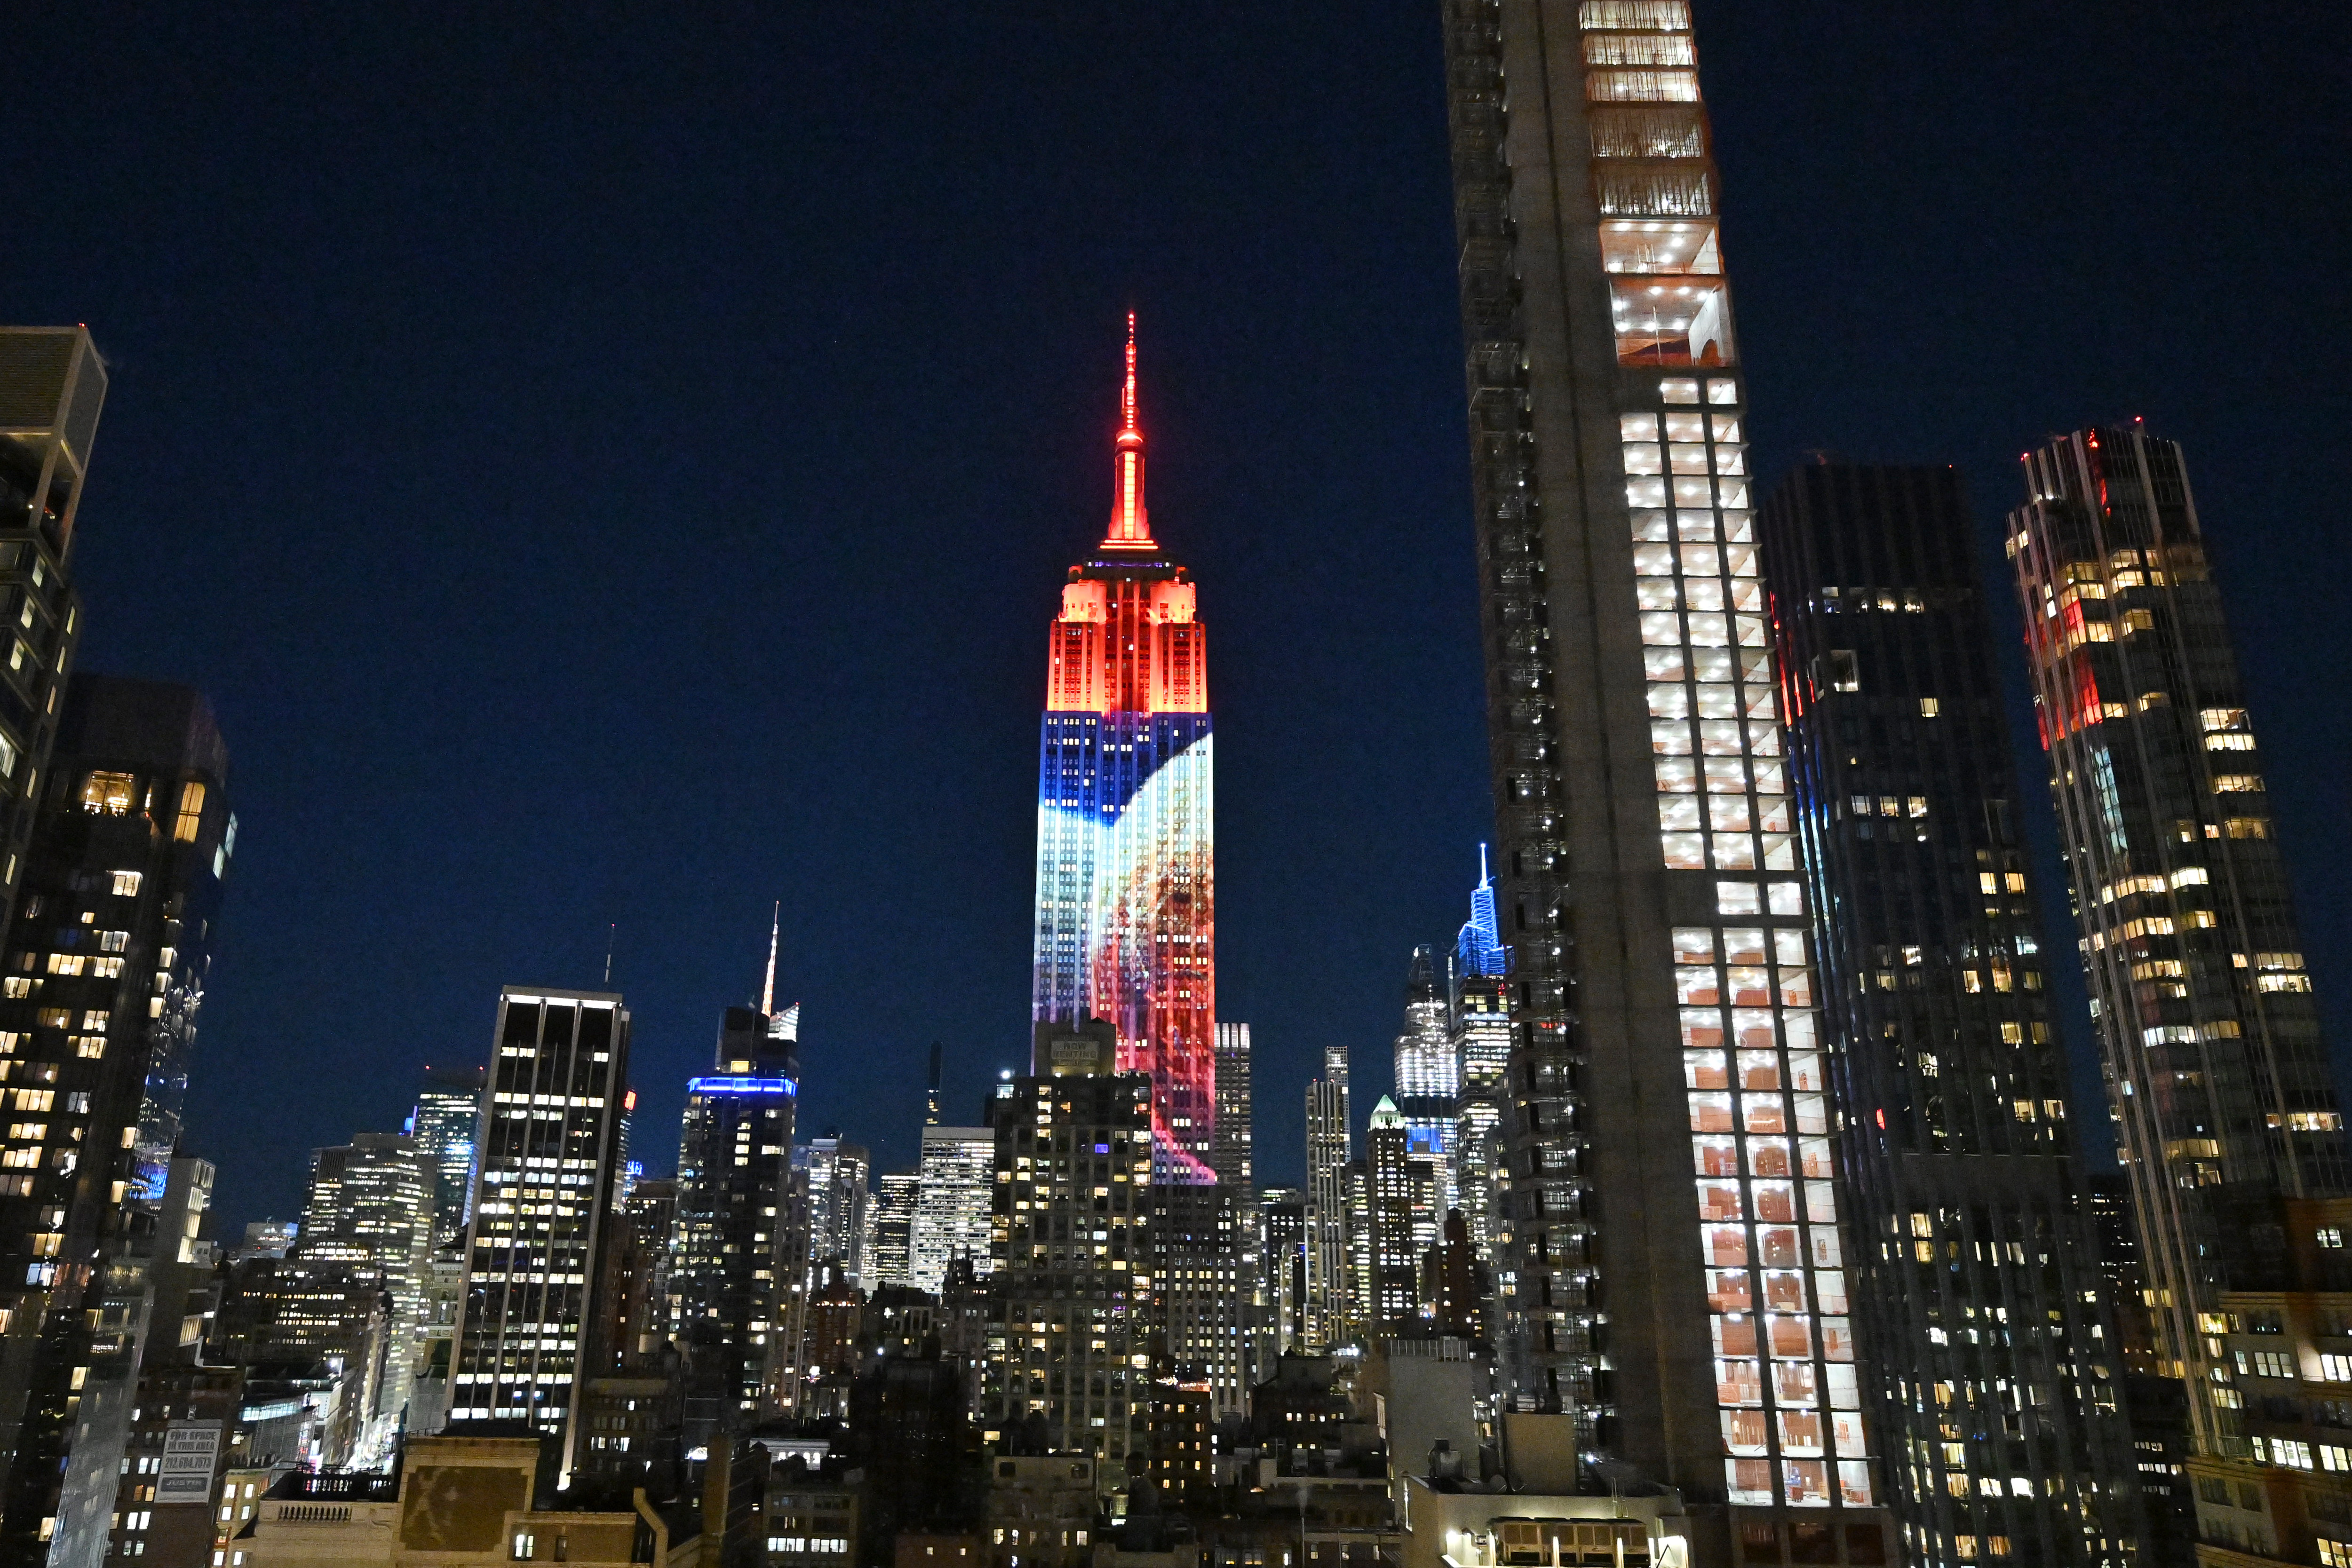 Empire State Building Star Wars-lichten